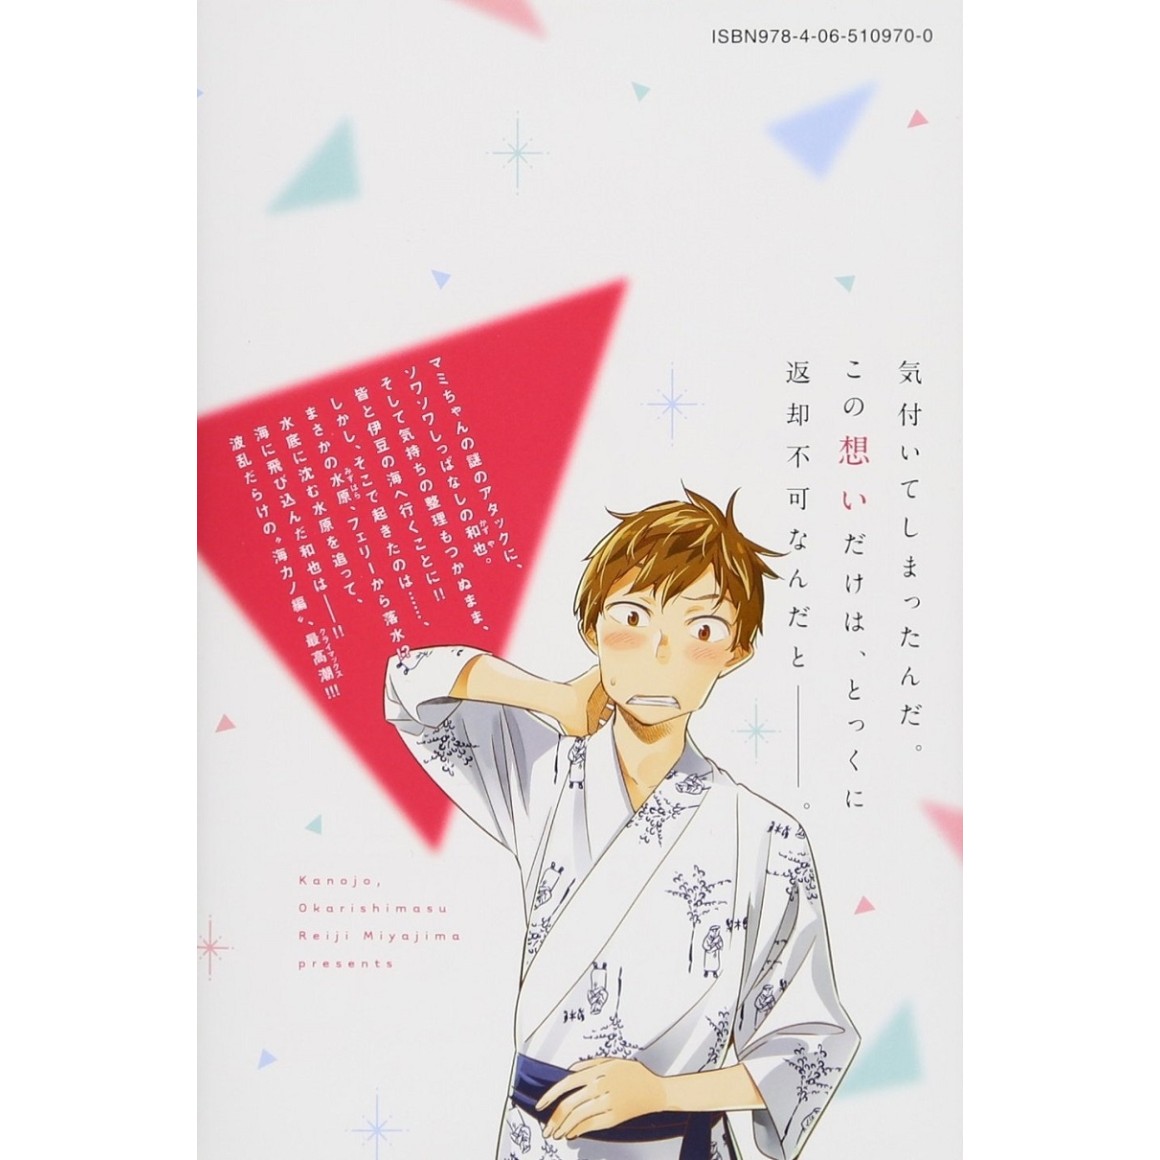 Kanojo, Okarishimasu Vol. 4 (Rent a Girlfriend) - ISBN:9784065112076